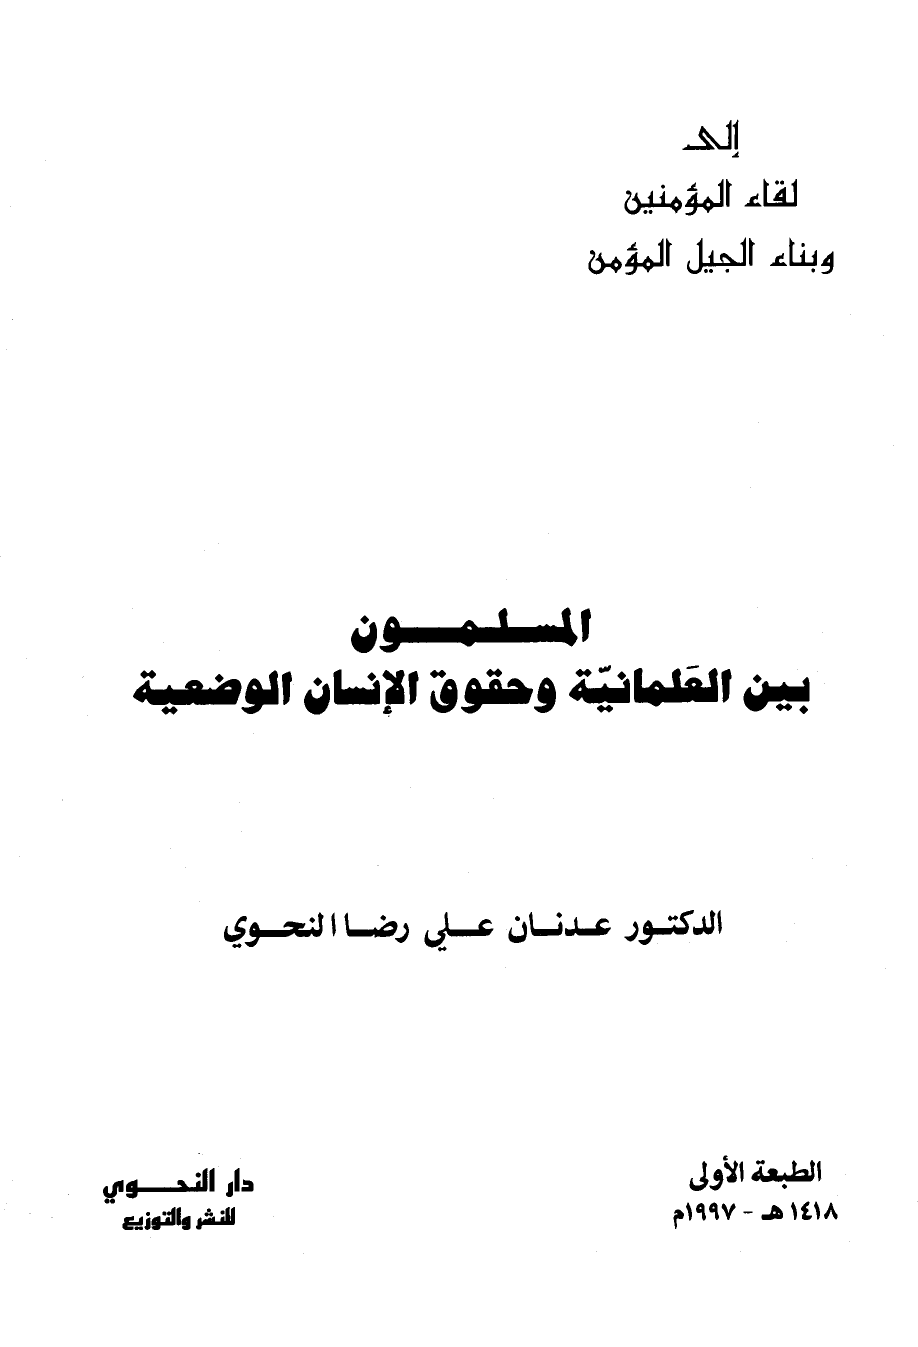 تنزيل وتحميل كتاِب المسلمون بين العلمانية وحقوق الإنسان الوضعية pdf برابط مباشر مجاناً 